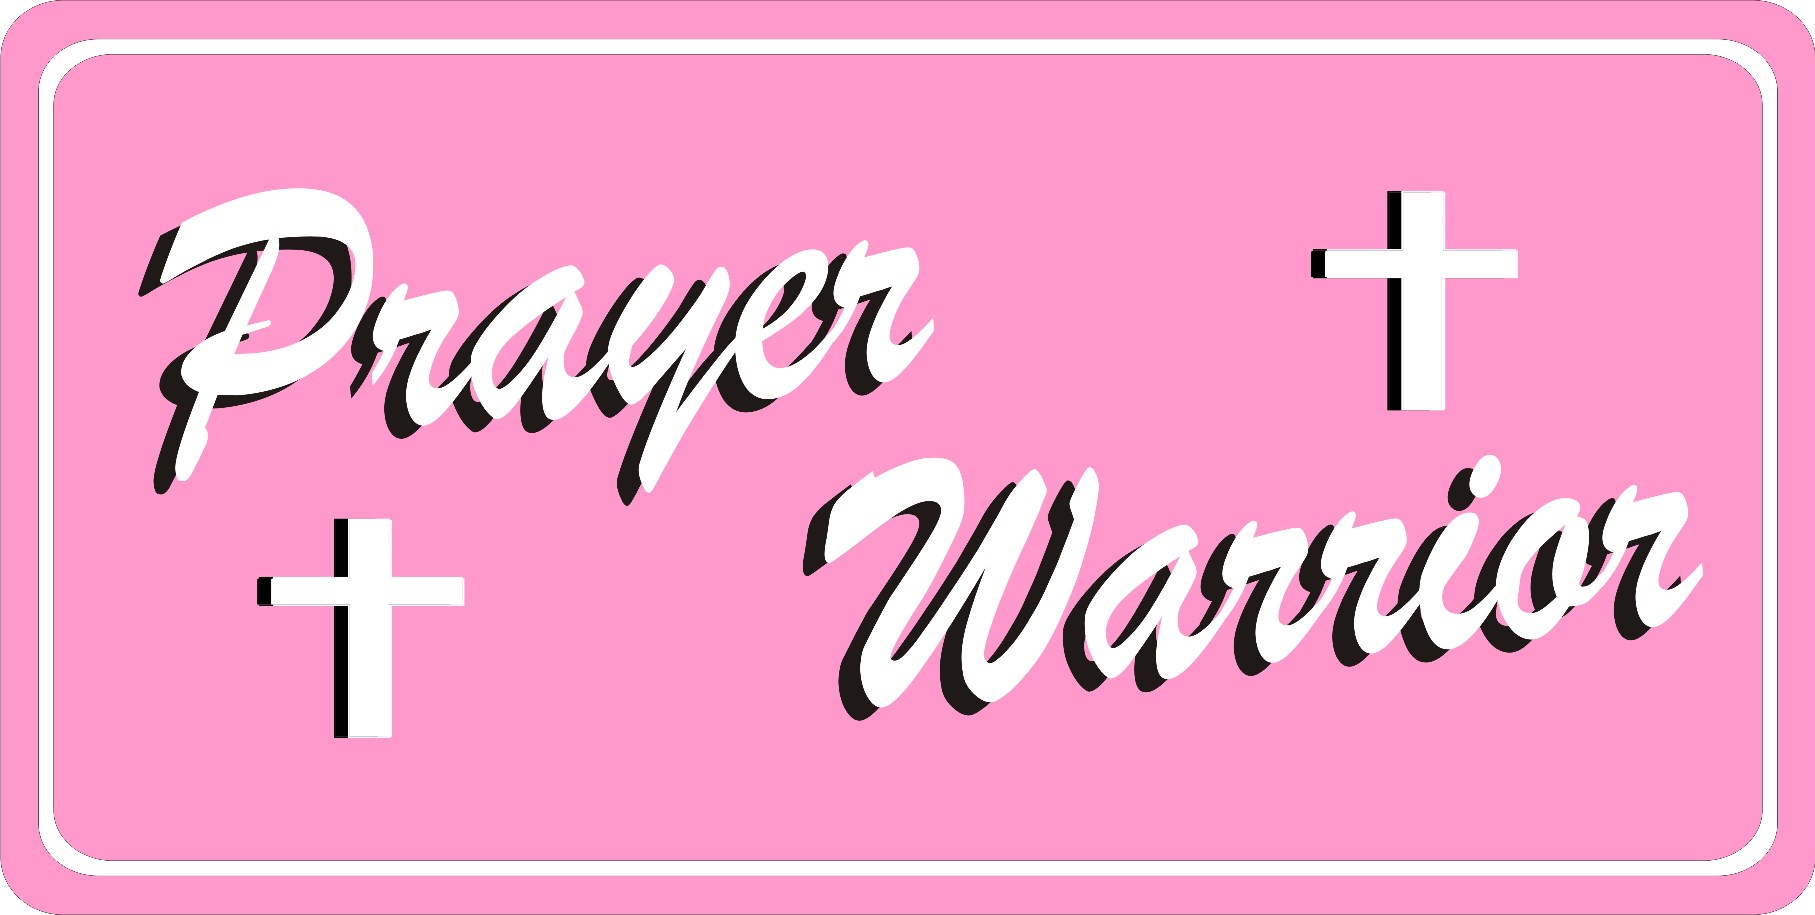 Prayer Warrior On Pink Photo LICENSE PLATE